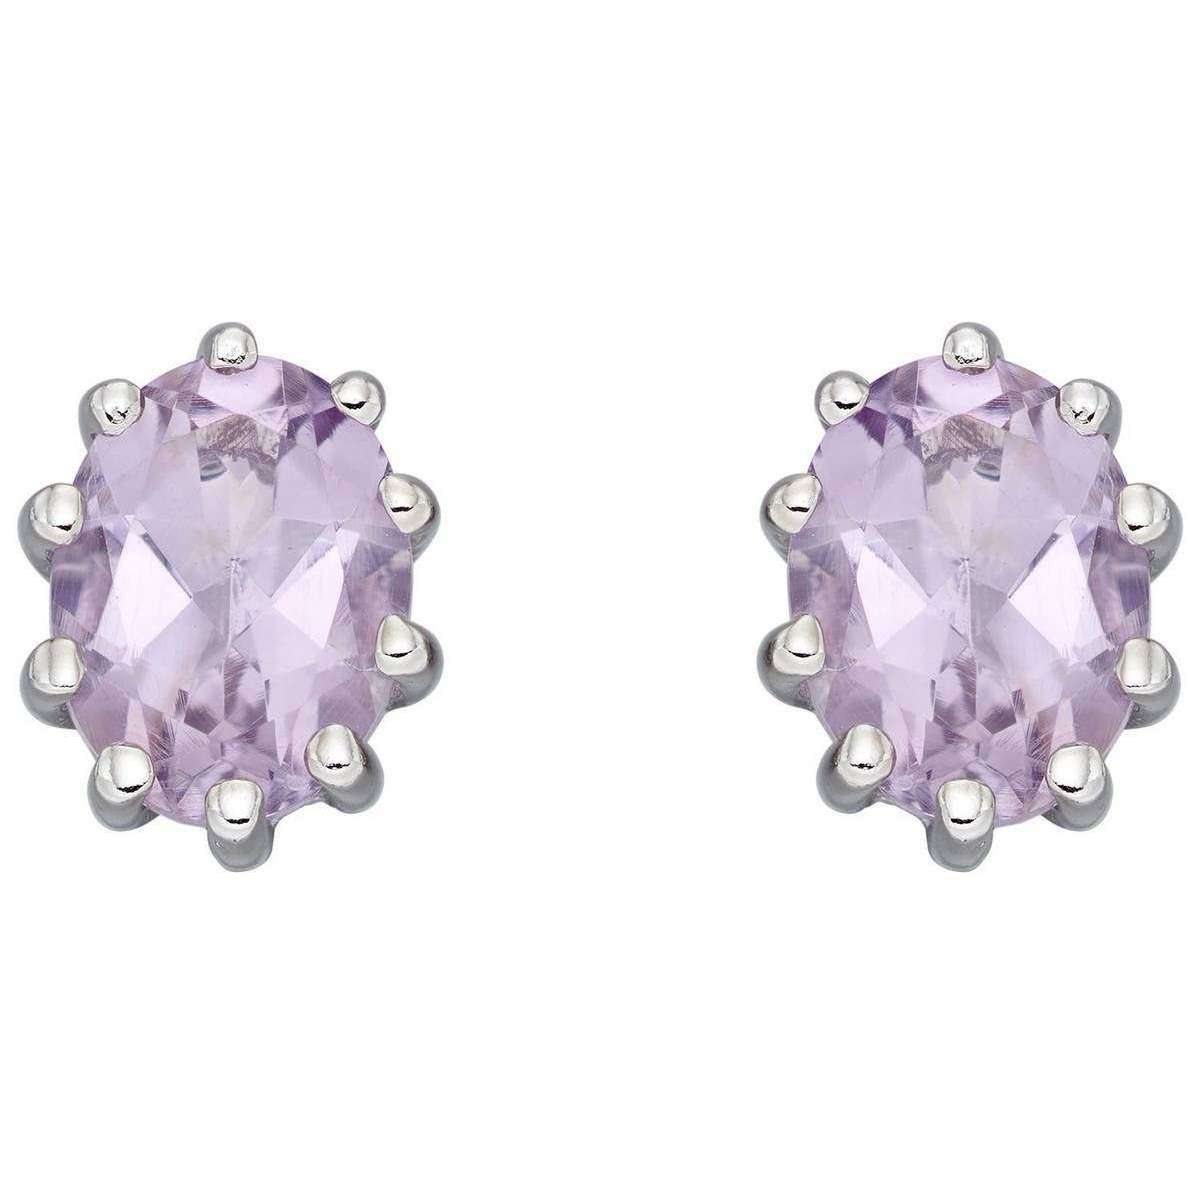 Elements Silver Amethyst Earrings - Pink/Silver